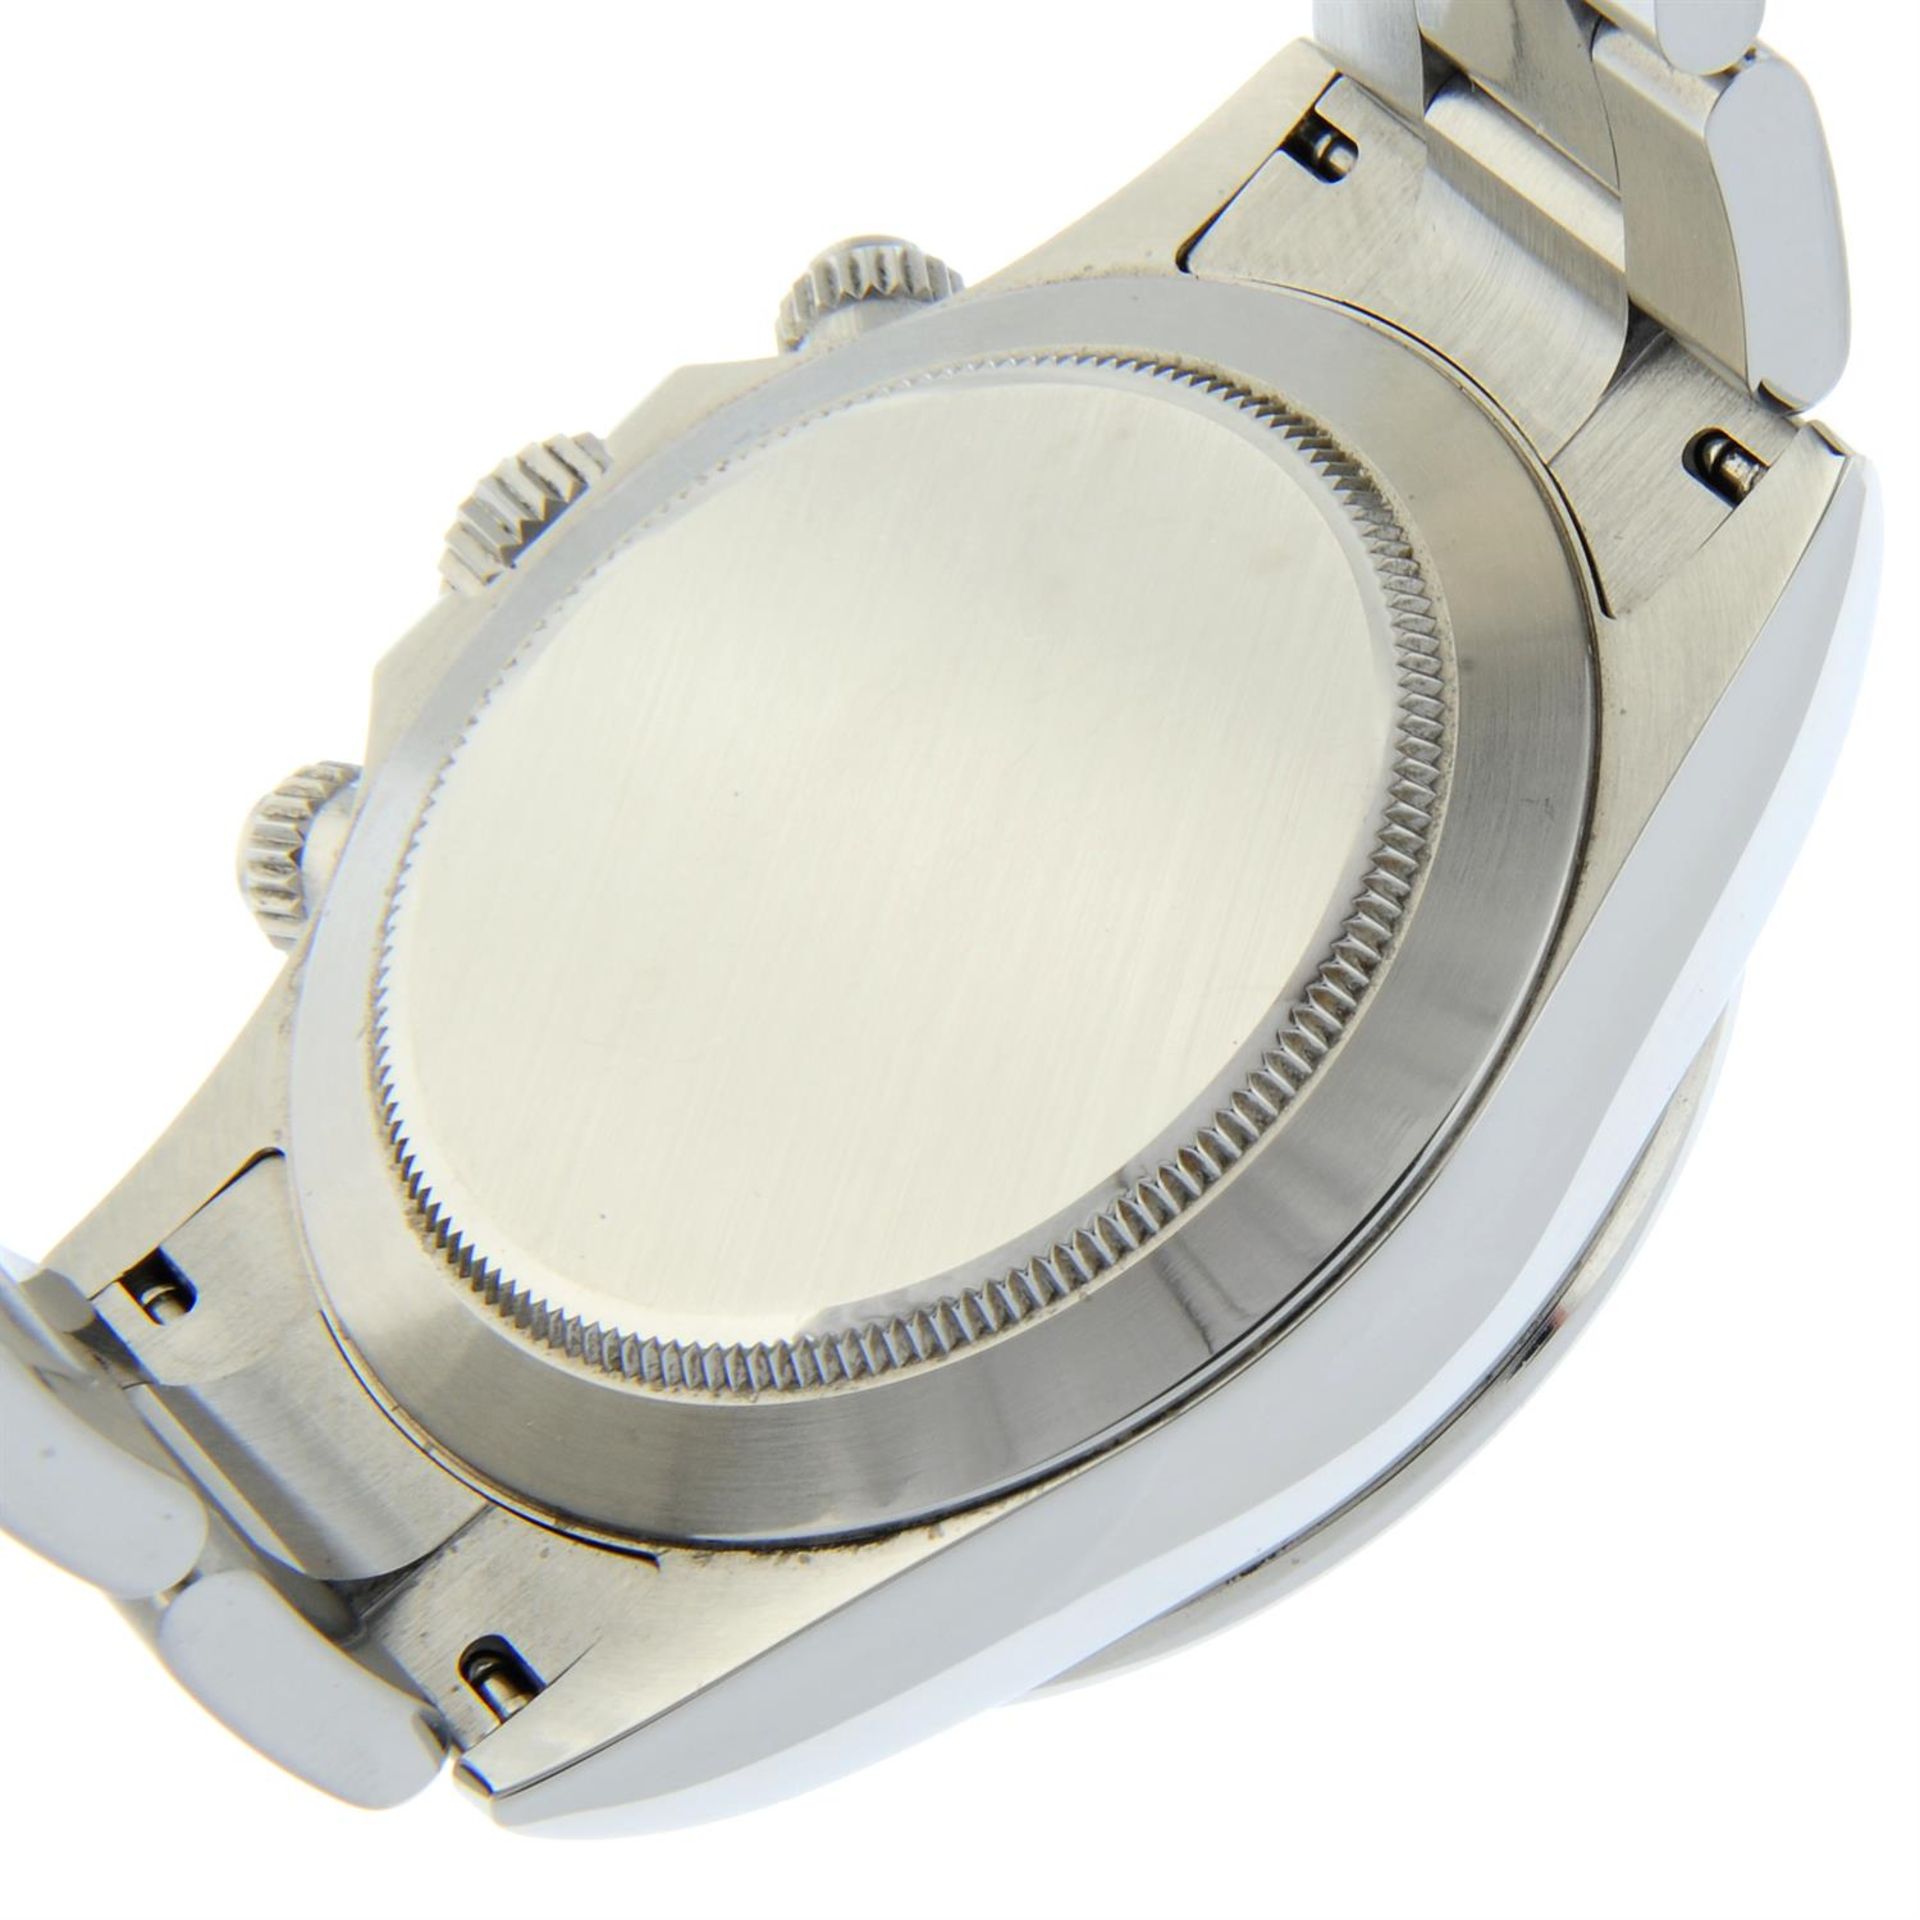 Rolex - an Oyster Perpetual Cosmograph Daytona watch. - Bild 4 aus 5